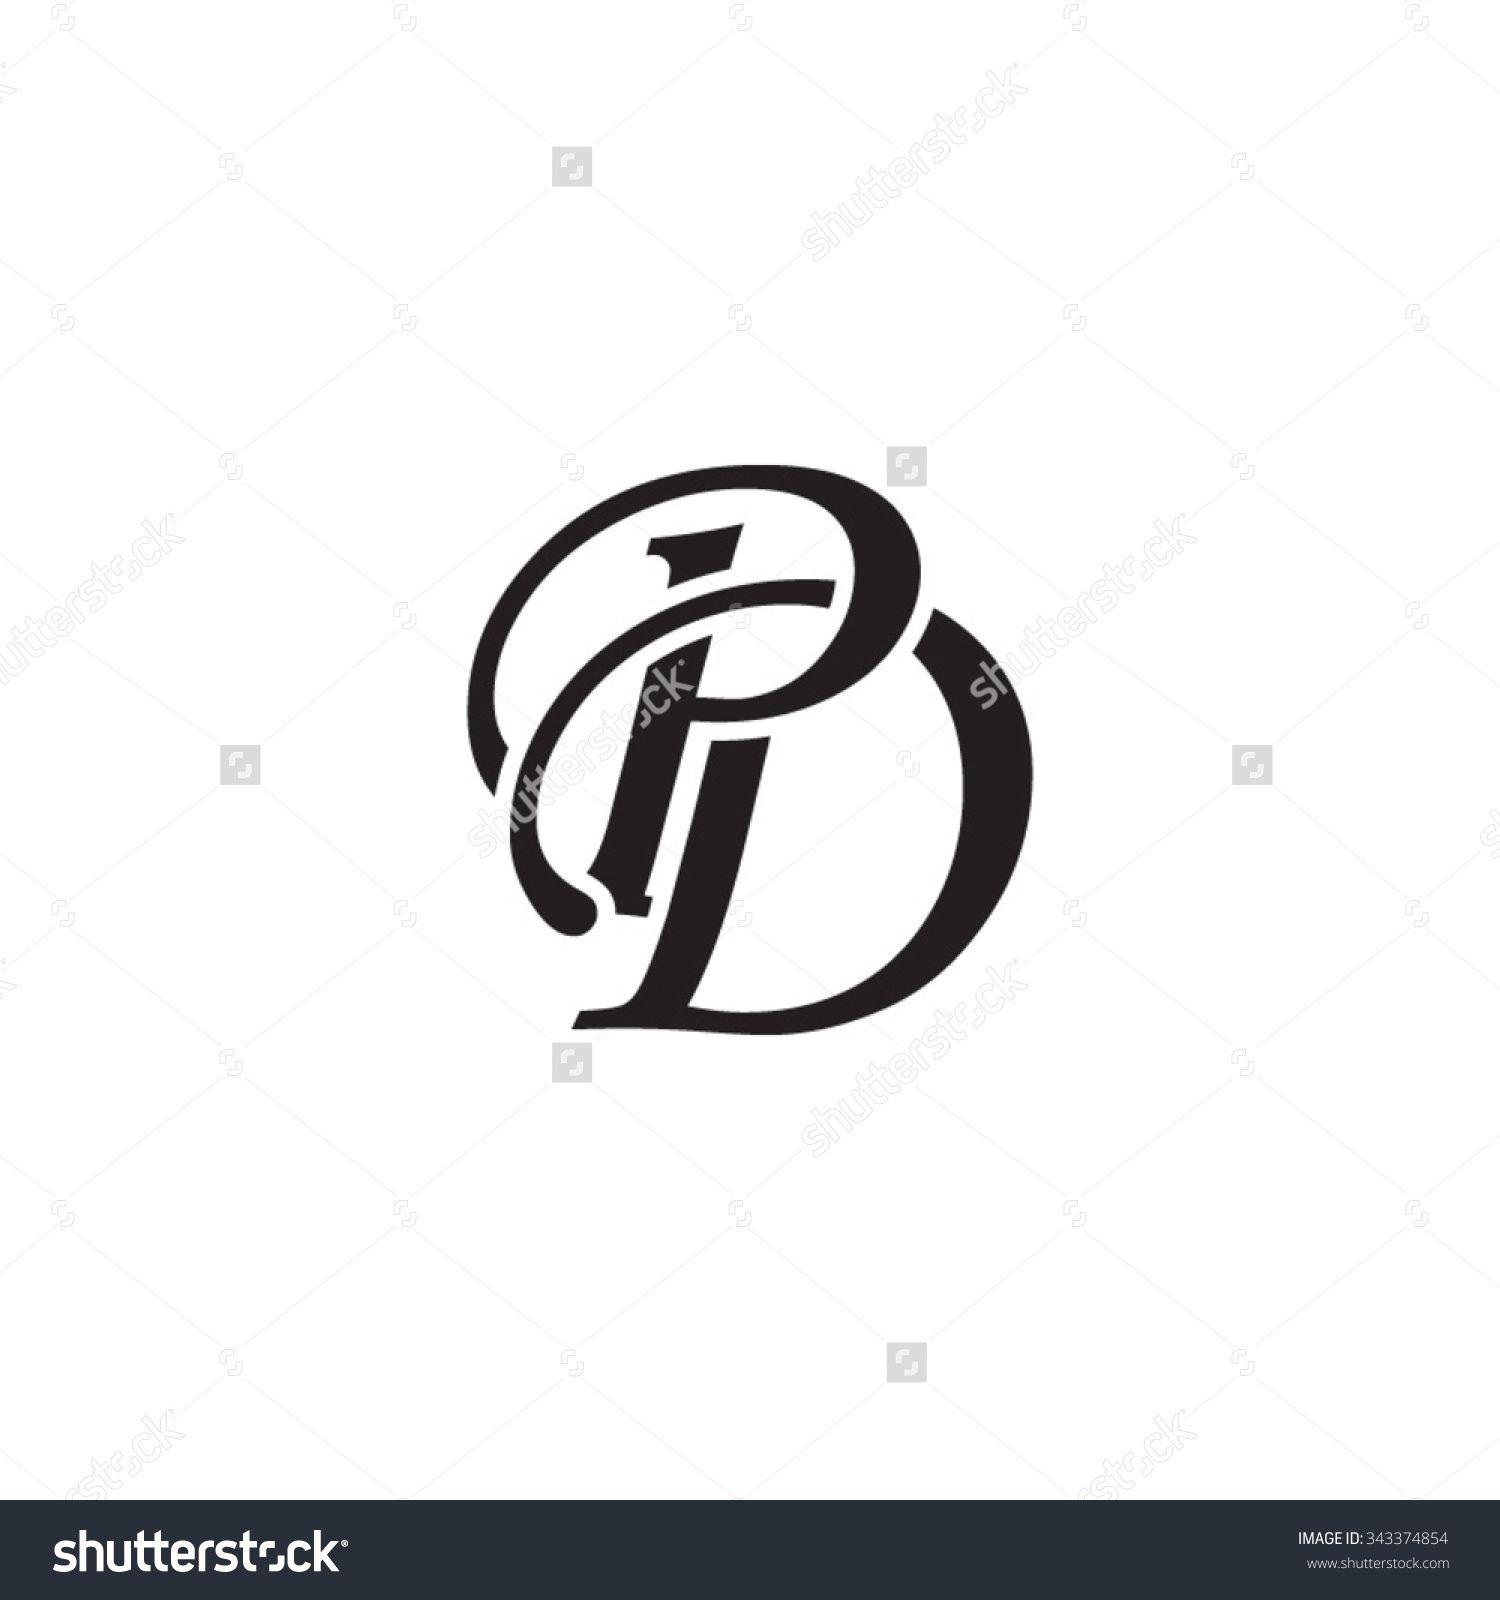 PD Logo - Pin by Cut Andi on Logo, design, etc. | Monogram logo, Monogram ...